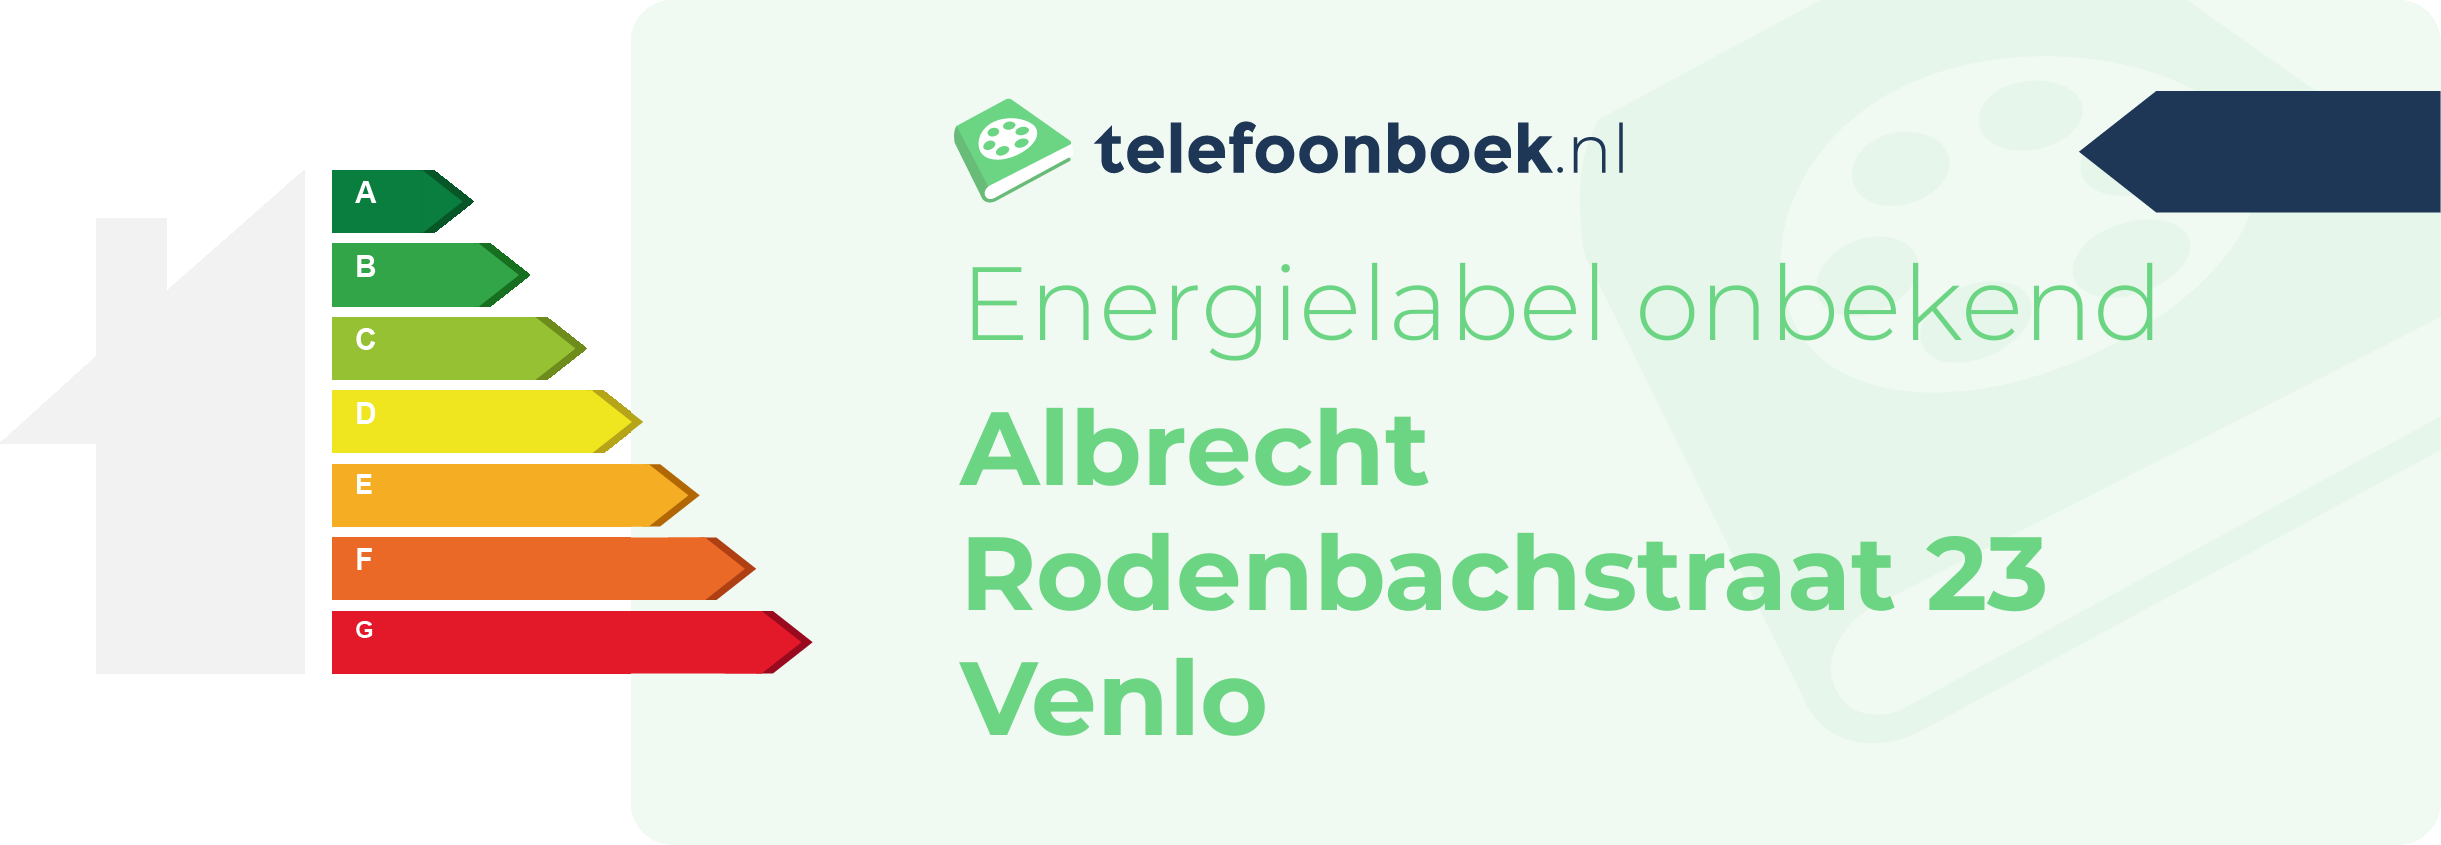 Energielabel Albrecht Rodenbachstraat 23 Venlo